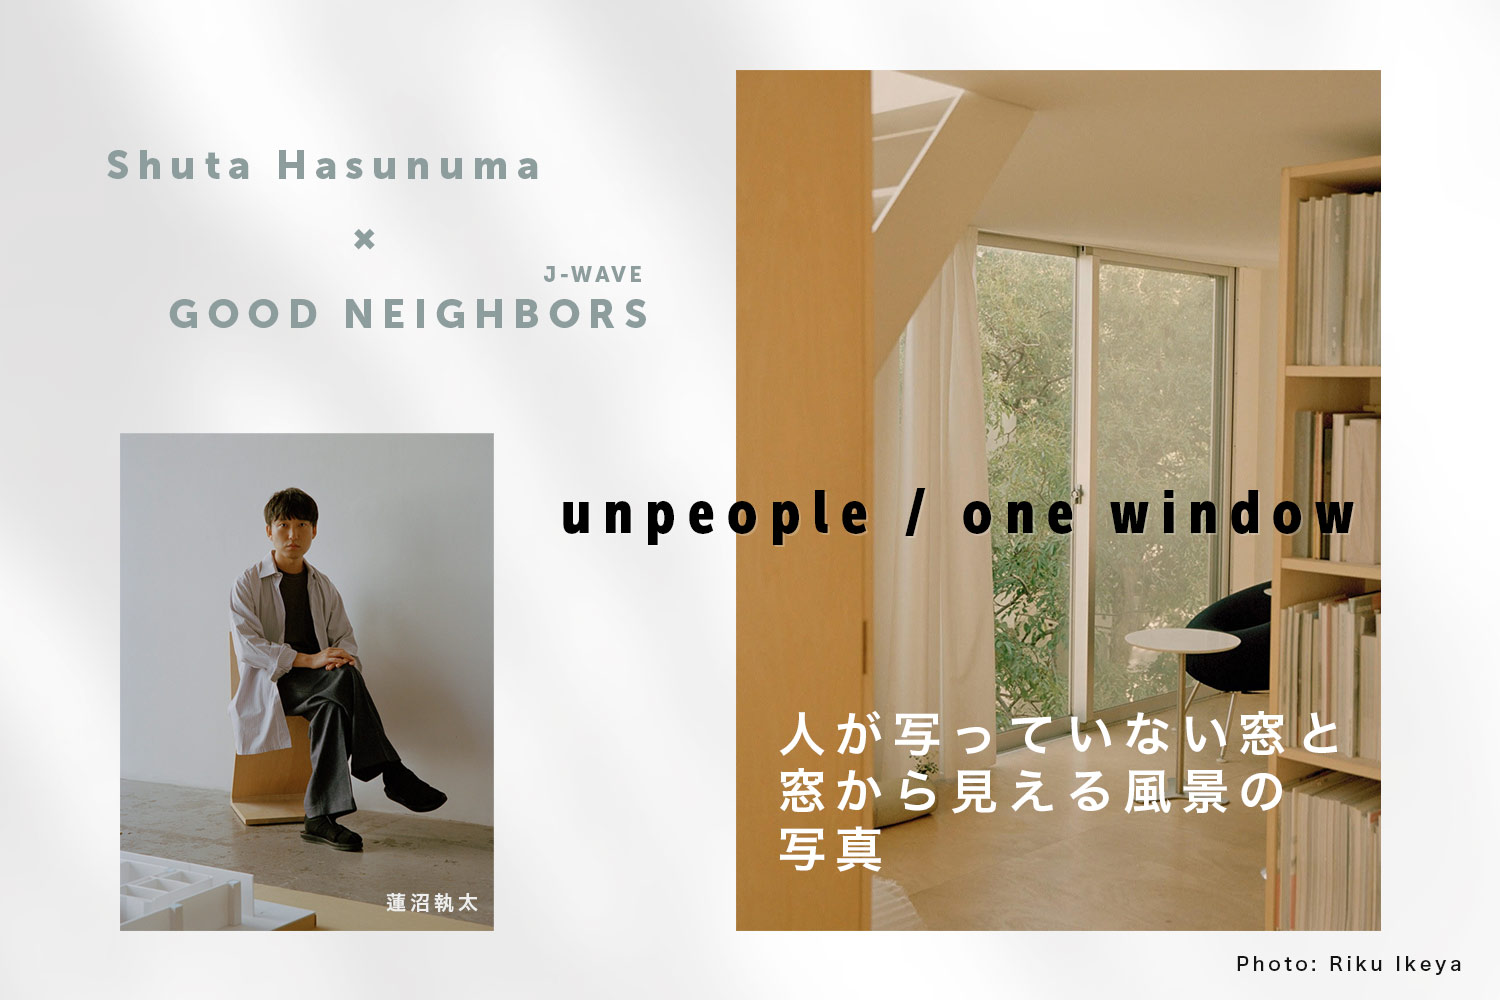 蓮沼執太のニューアルバムと「GOOD NEIGHBORS」がコラボ！人が写っていない窓と窓から見える風景の写真を募集